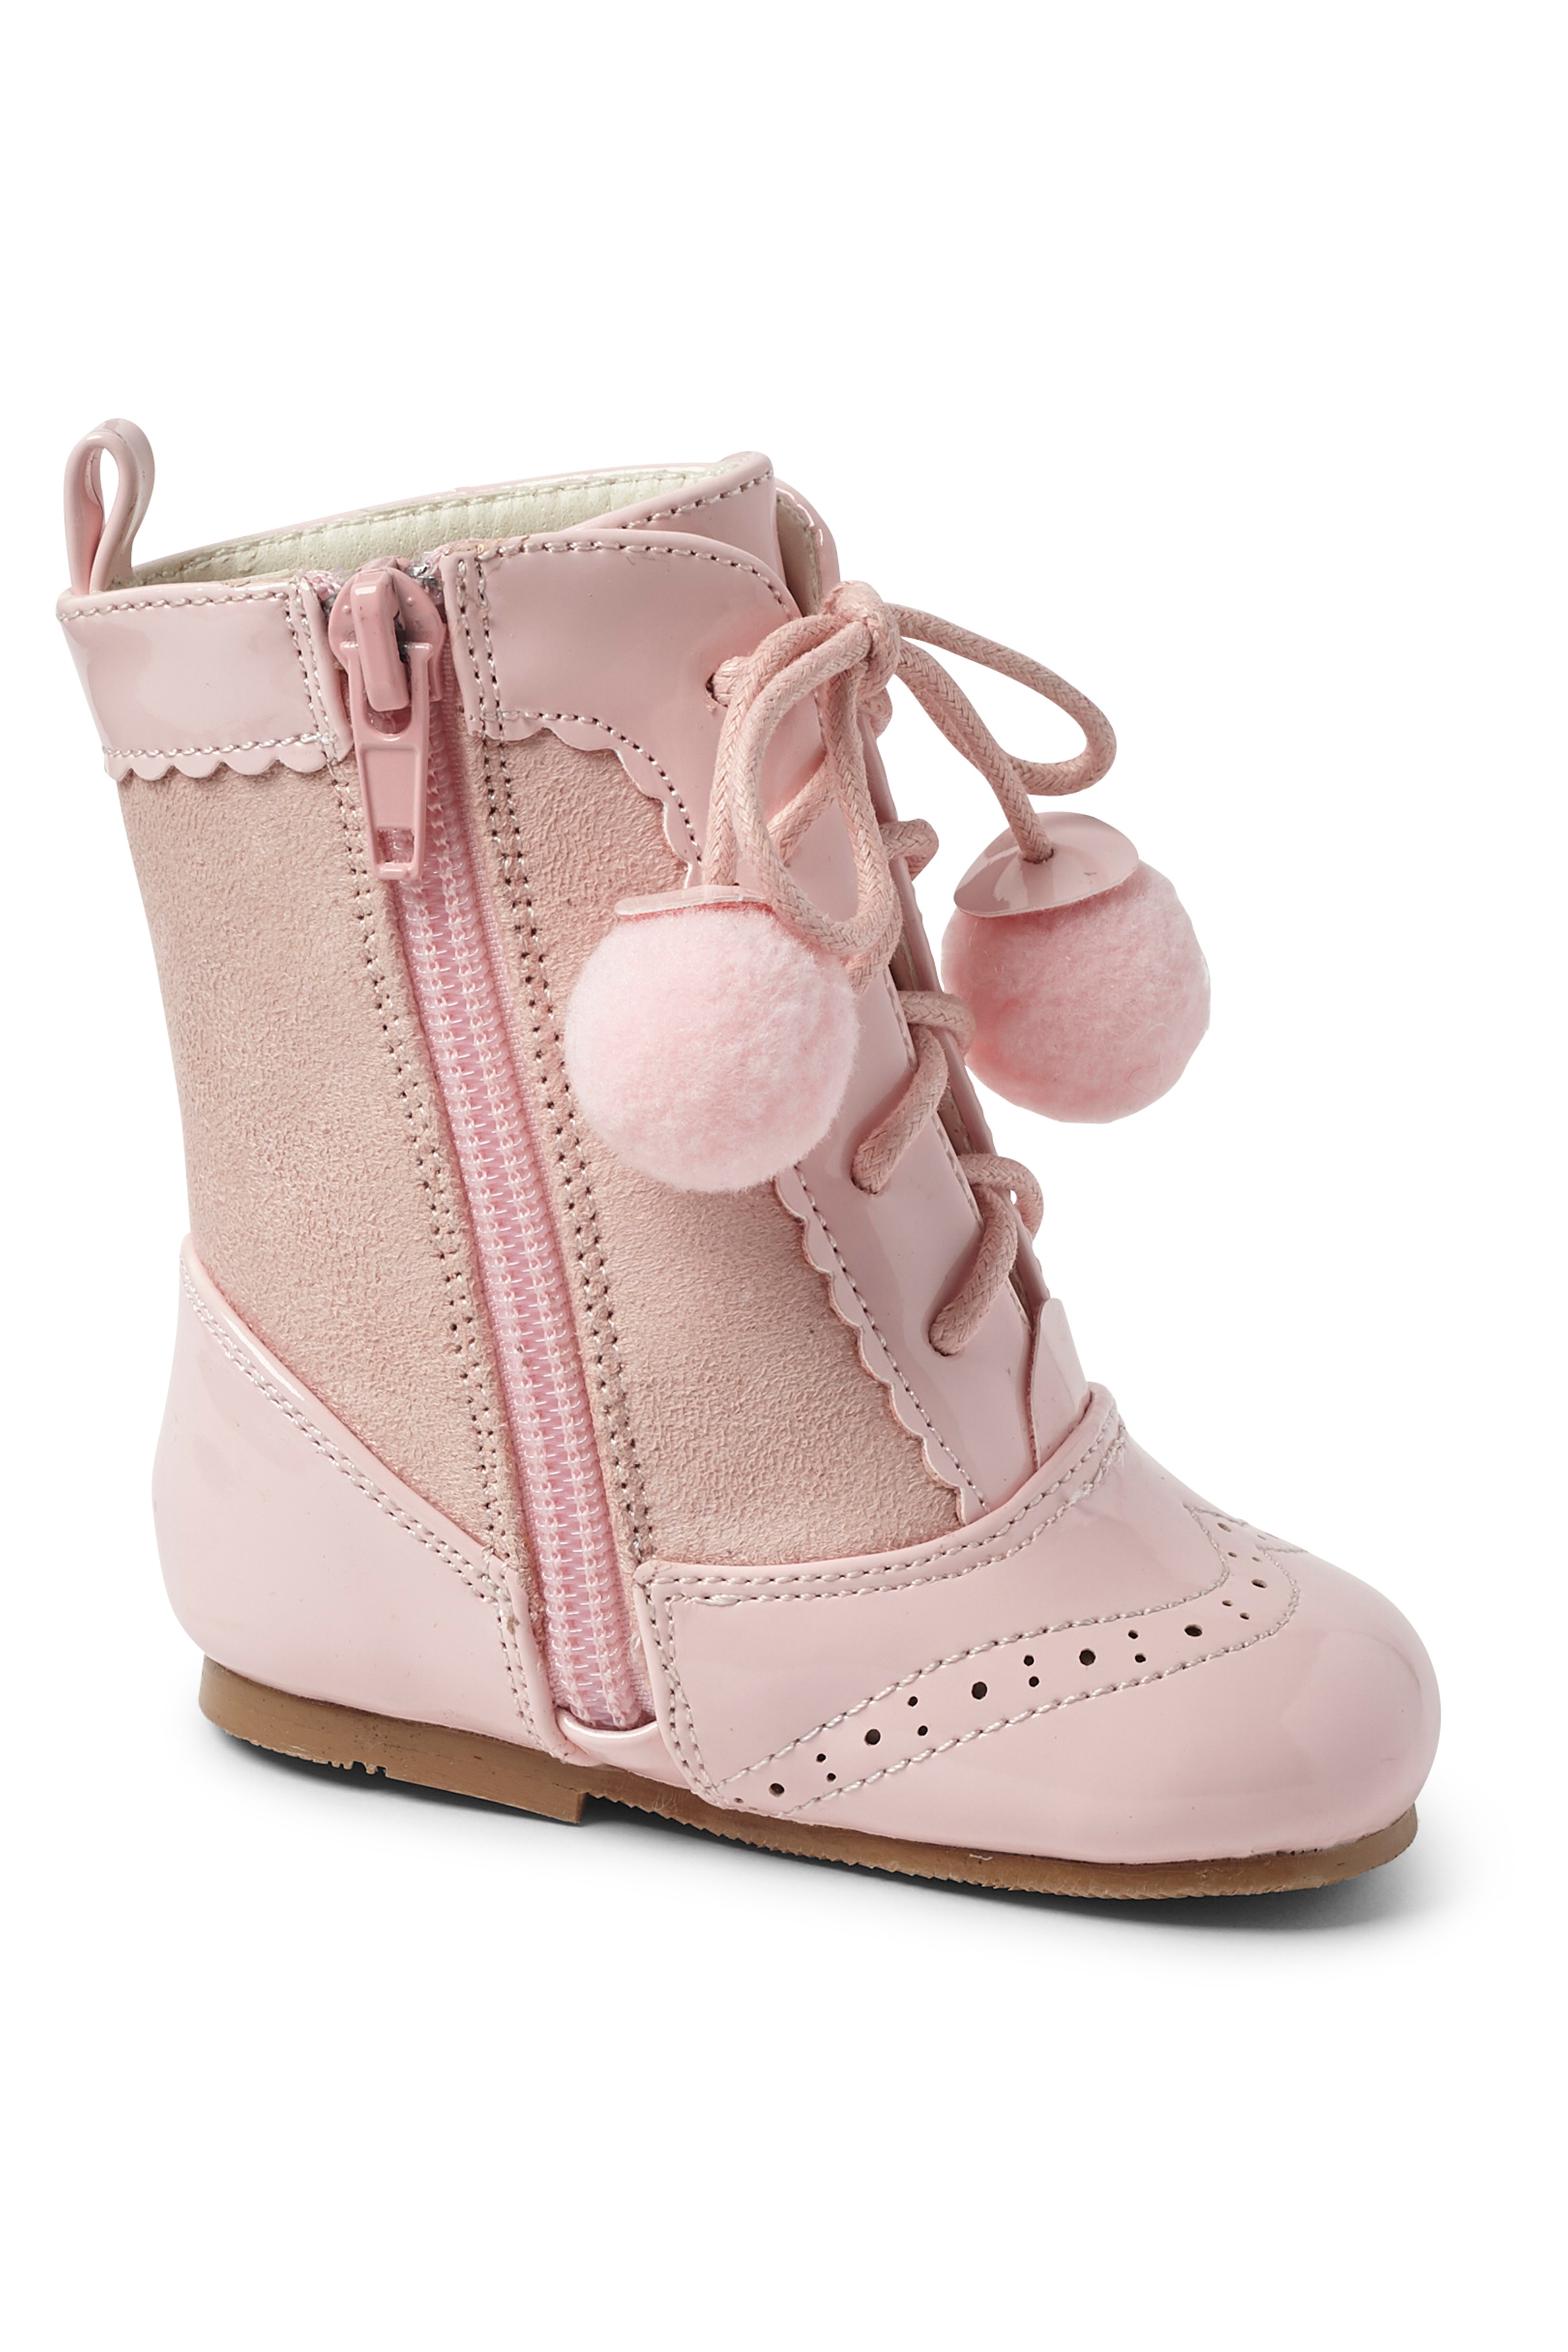 Kinder Lackleder Sienna Brogue Stiefel mit Schnürung und Pom-Pom Details, Unisex Klassische Schuhe - Rosa